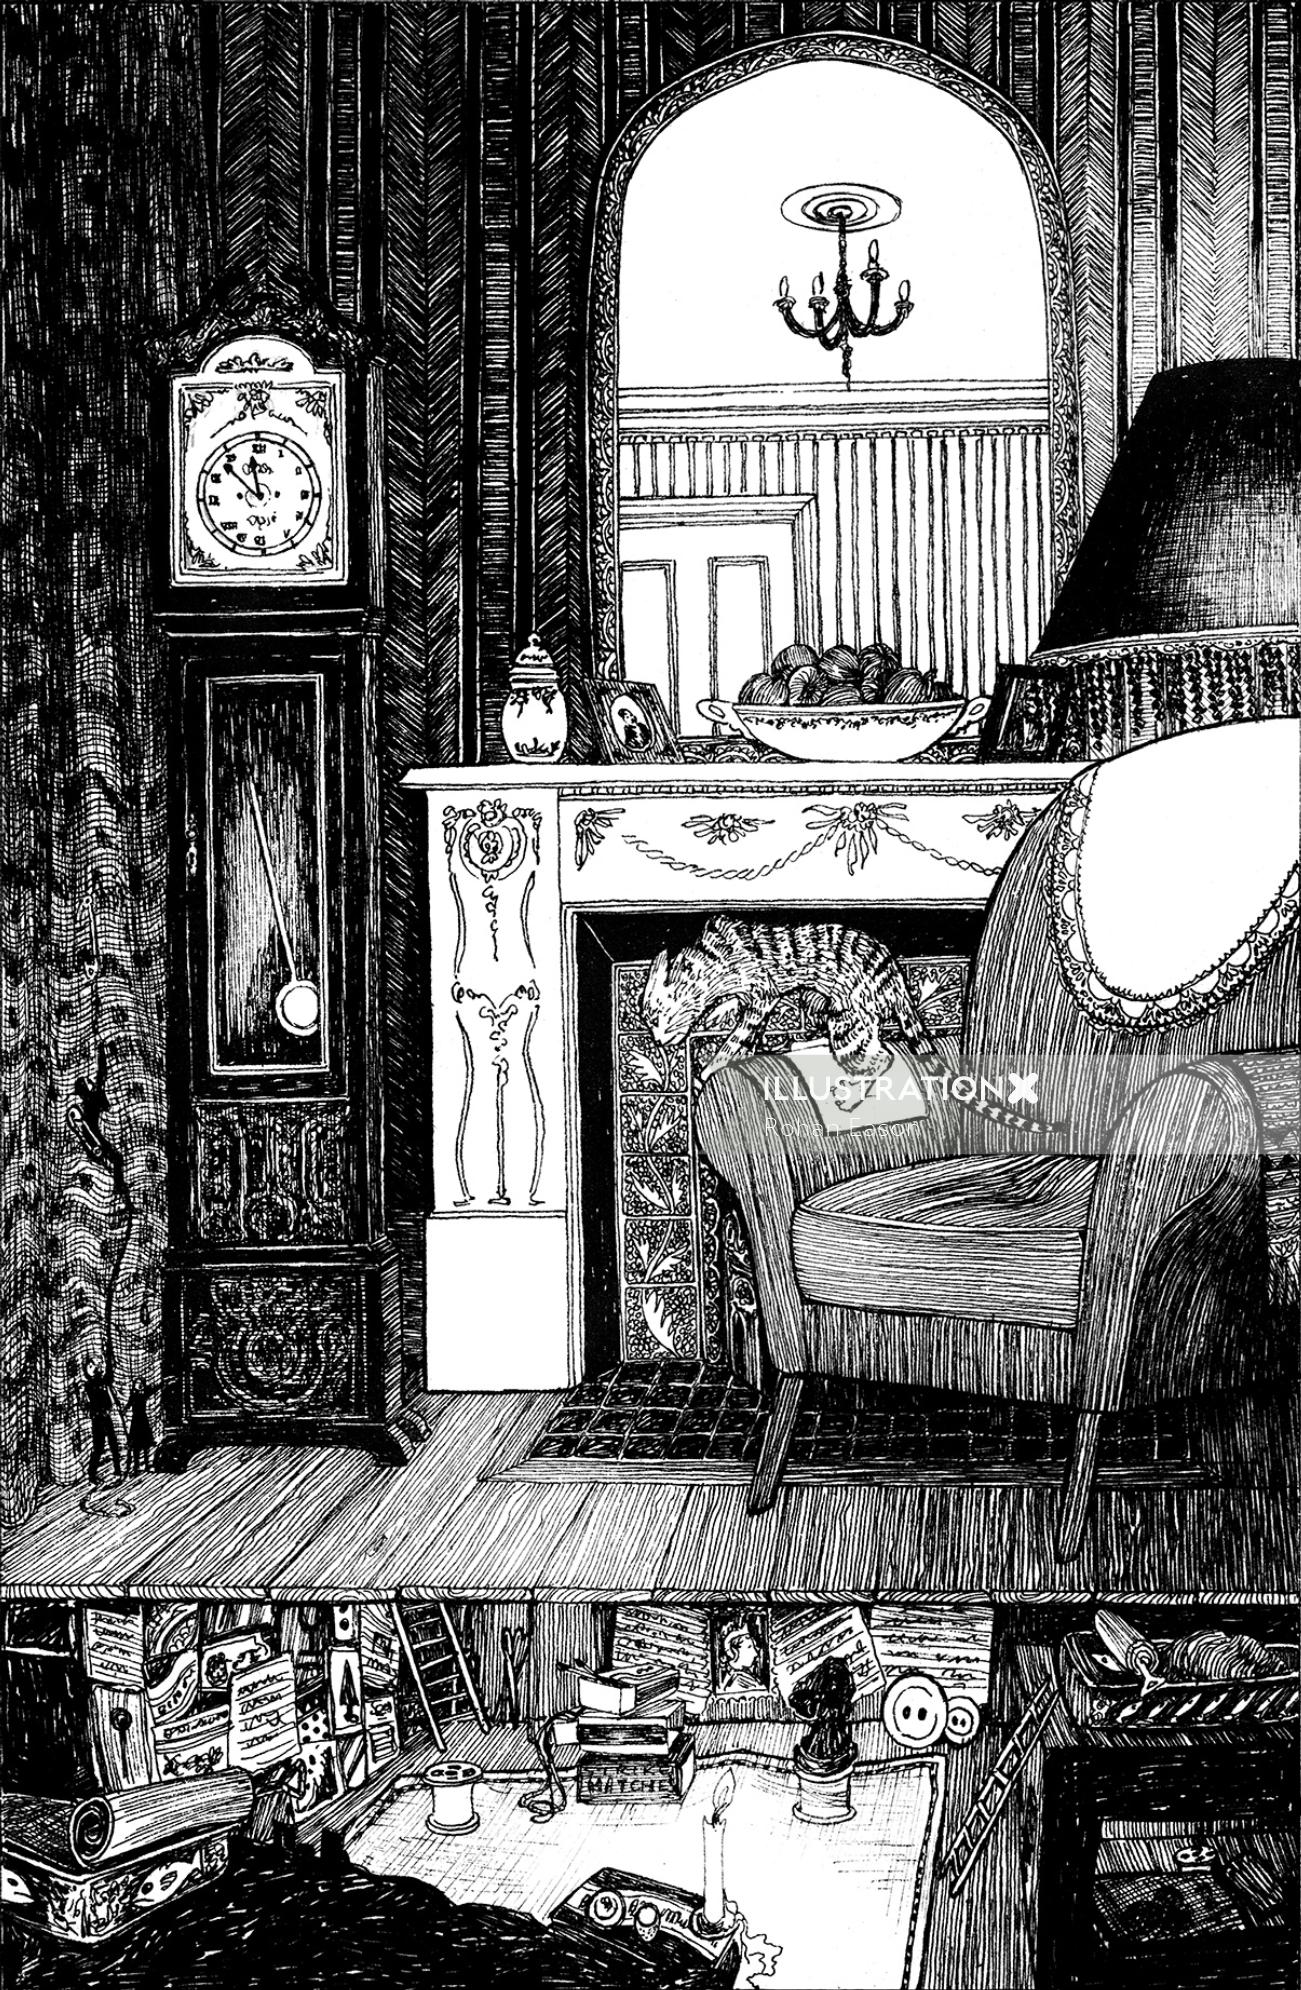 Black and white illustration of living room